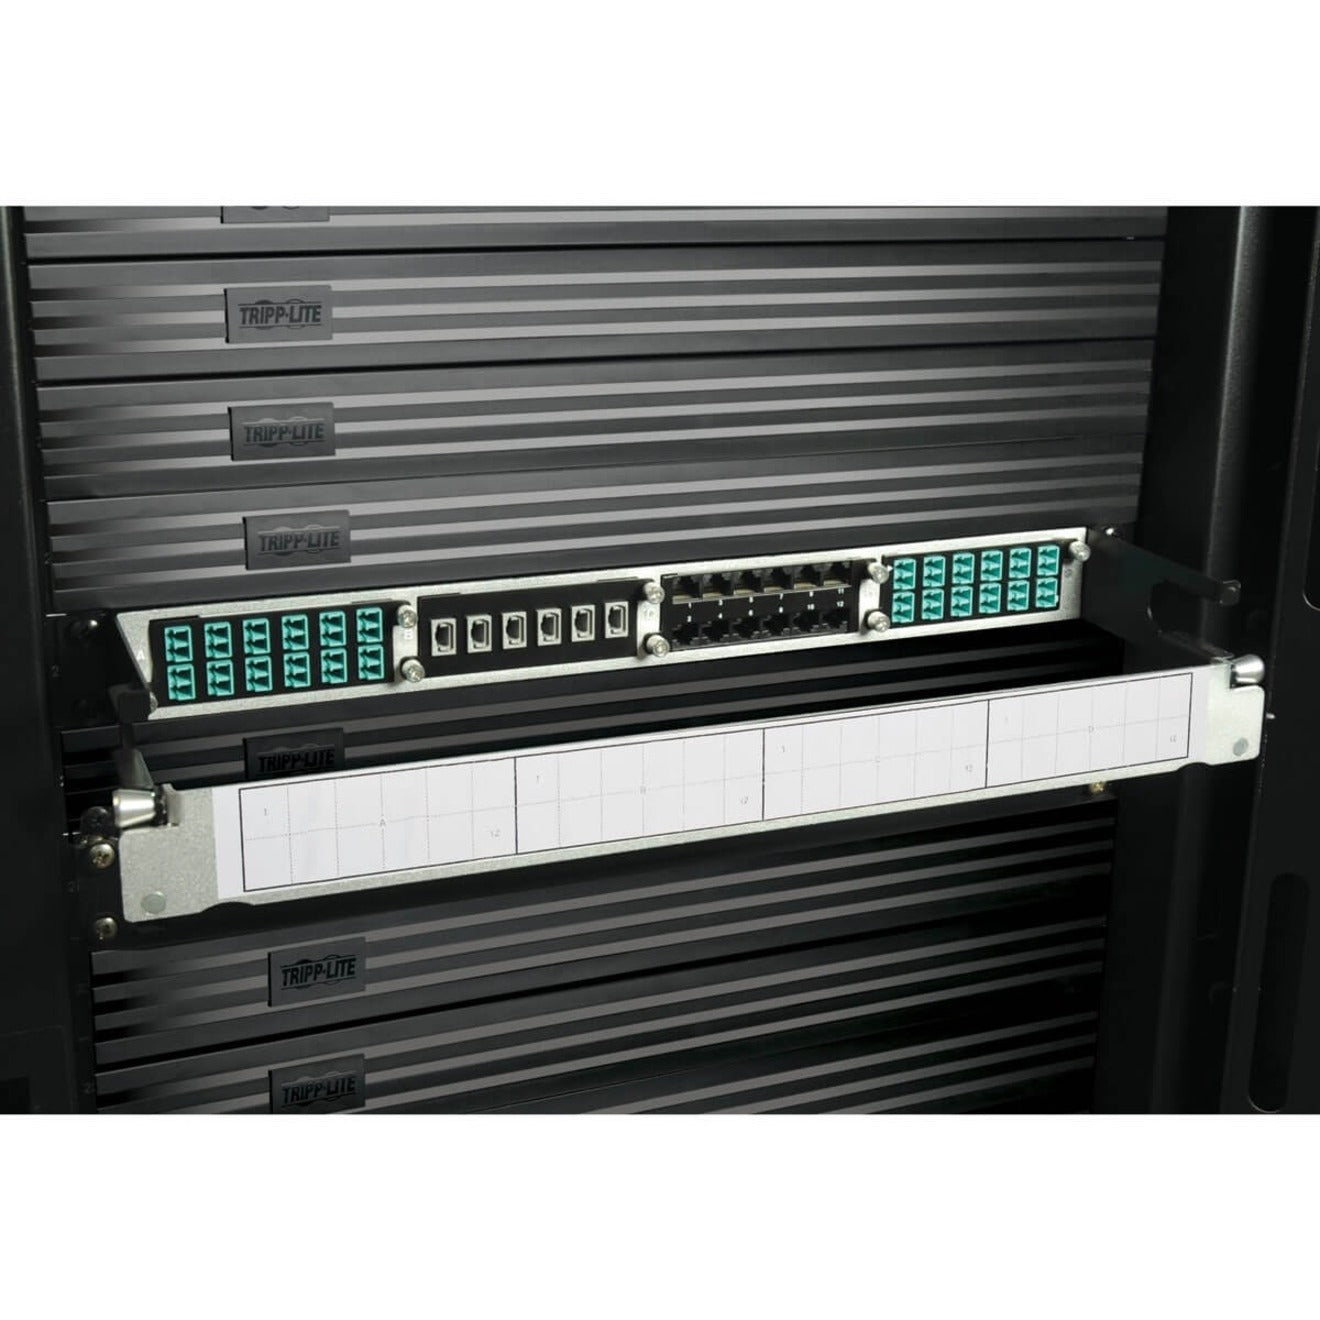 Tripp Lite N484-01U High Density Copper / Fiber Enclosure Panel, 1U, 4-Cassette Capacity